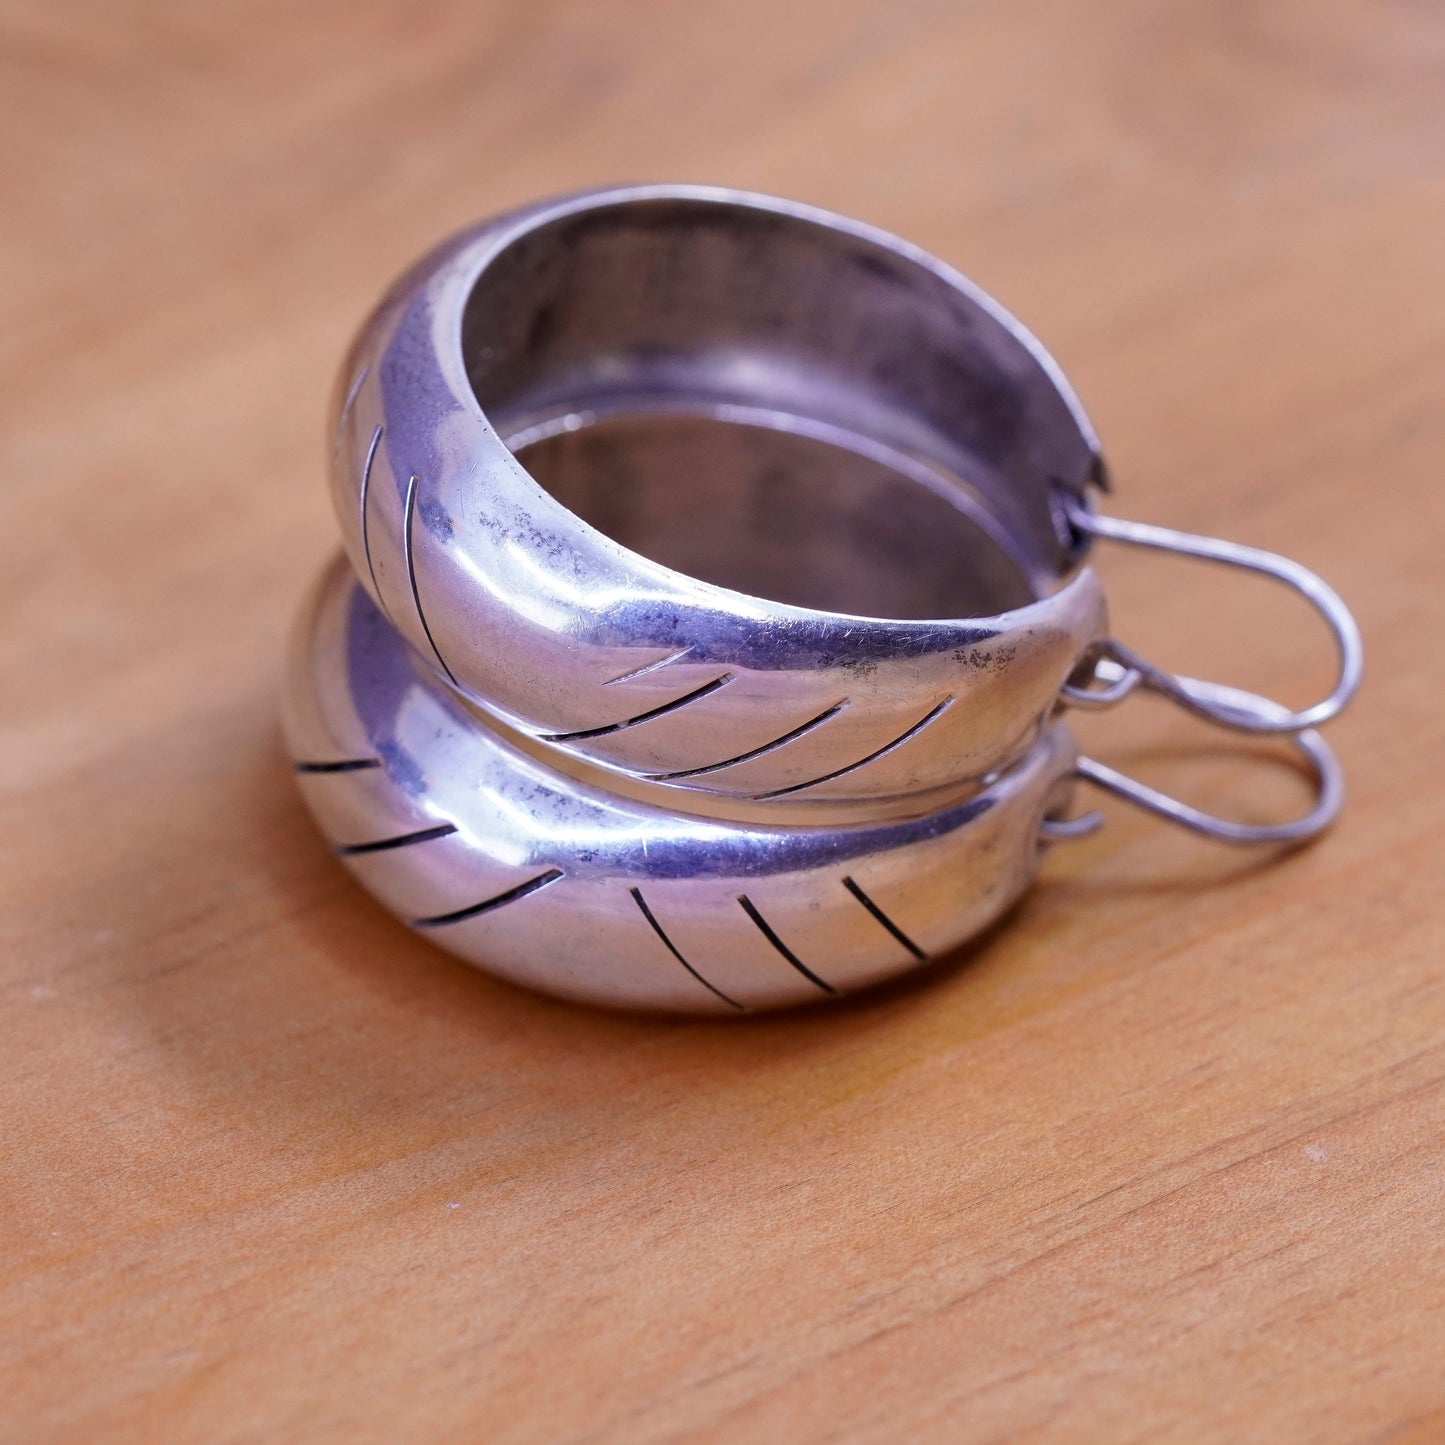 1.5”, Vintage Sterling silver handmade earrings, 925 textured hoops